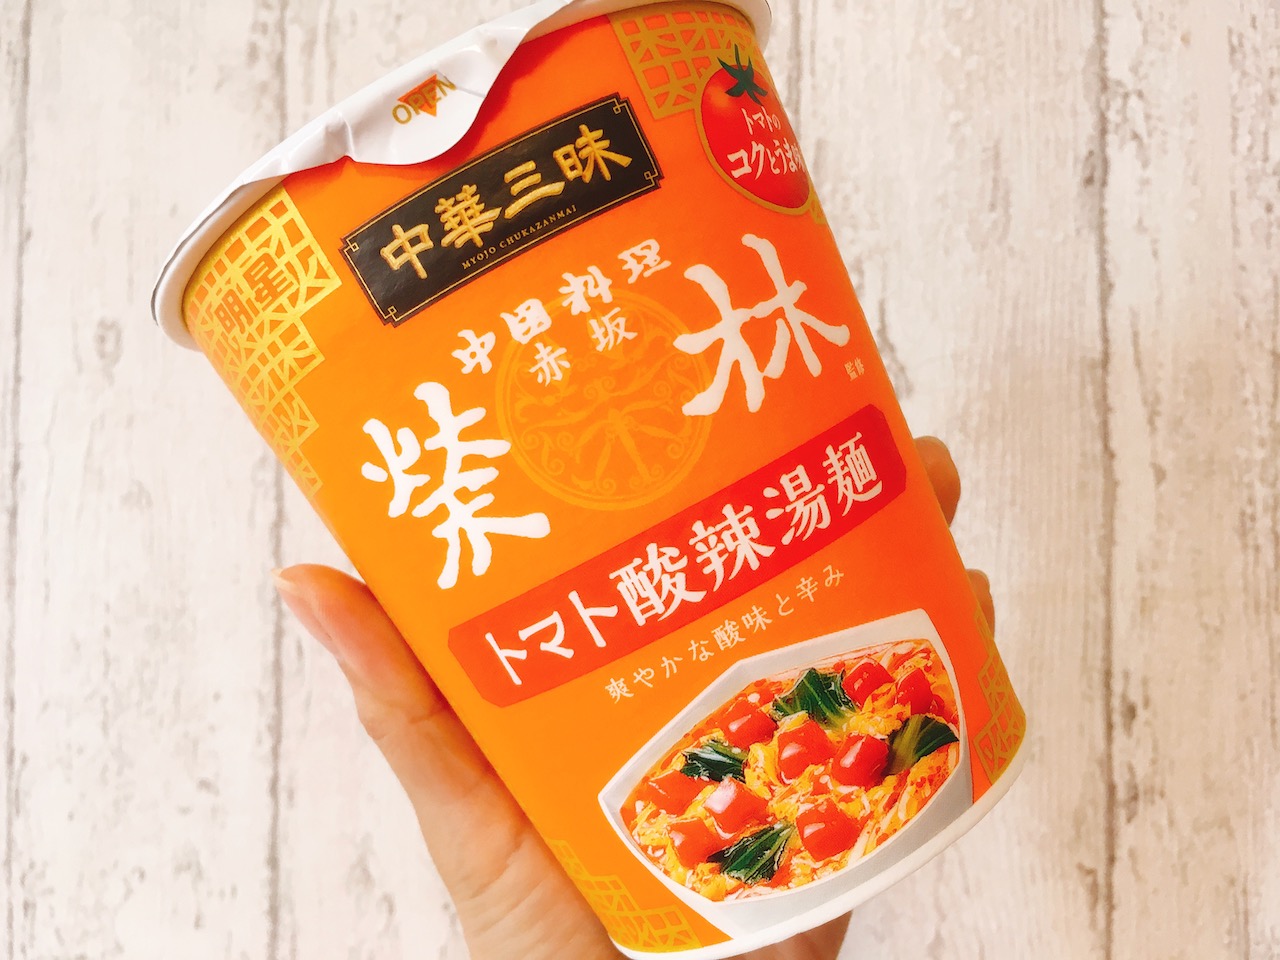 すっぱ辛い好き集合 中華三昧の新作カップ麺 トマト酸辣湯麺 食べてみた Appbank